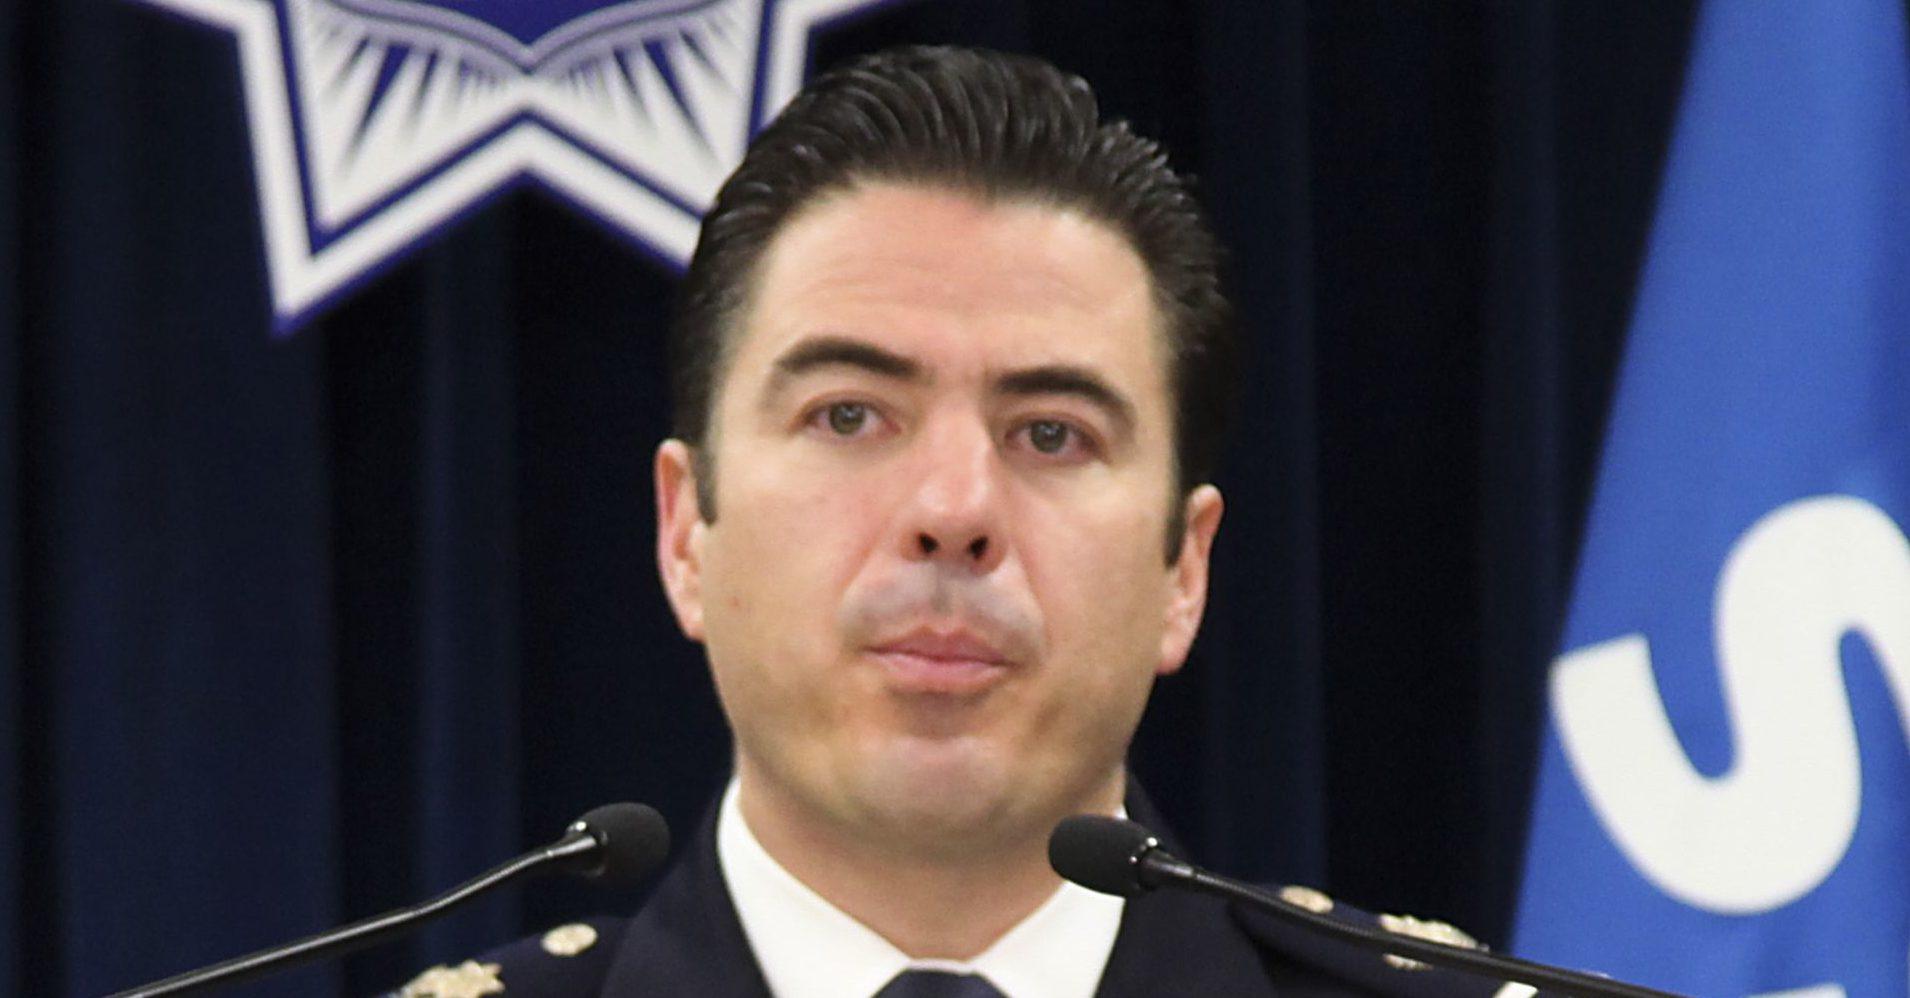 Juez ordena aprehensión de Luis Cárdenas Palomino, exmando de la Policía Federal